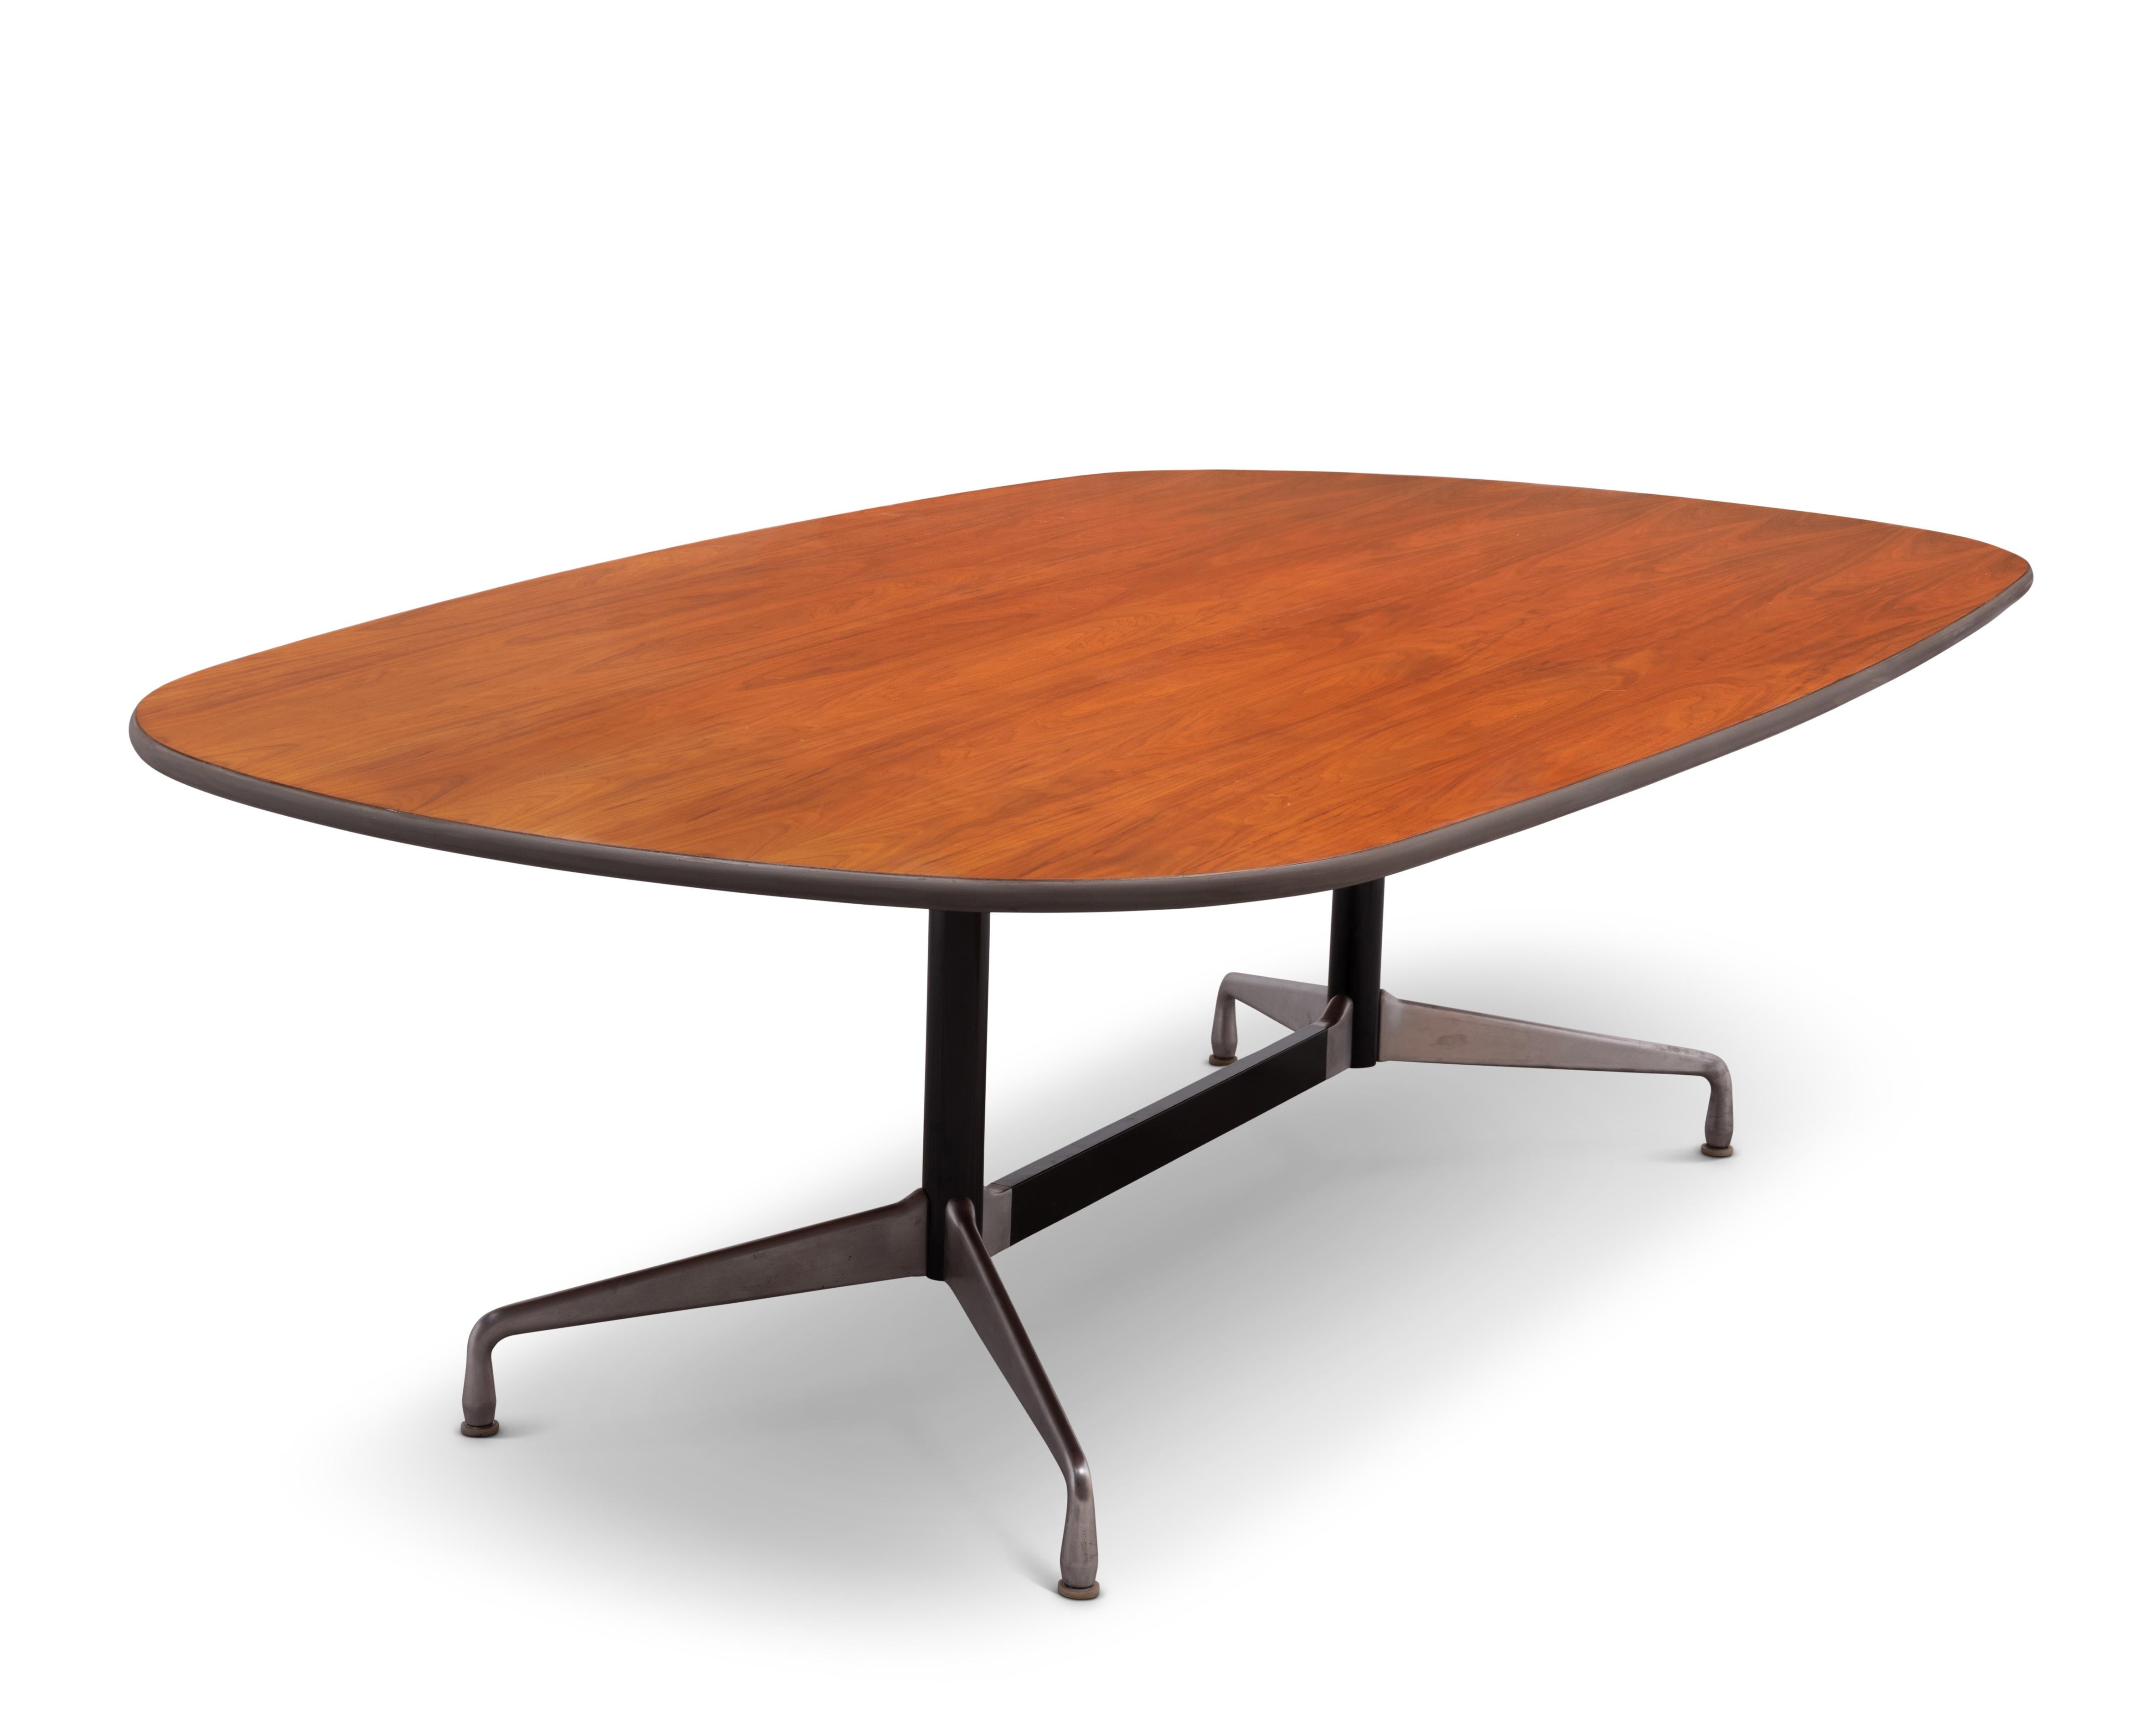 Acht Fuß langer Ess-/Konferenztisch aus Nussbaumholz, entworfen von Charles und Ray Eames und hergestellt von Herman Miller. Gestempelt 